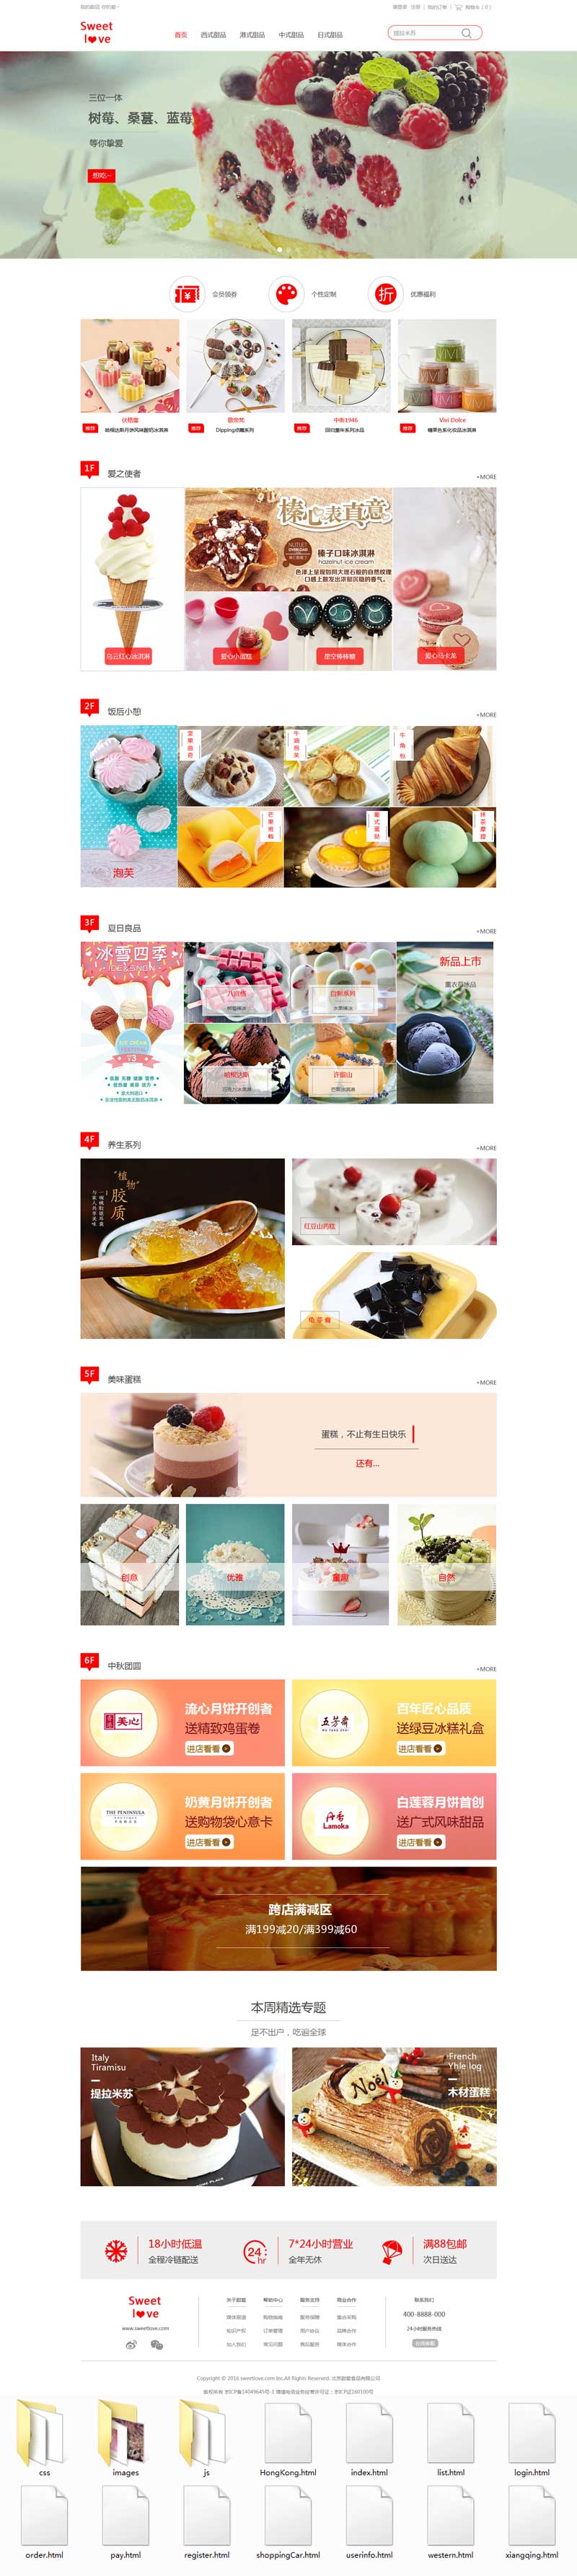 蛋糕甜品店铺预订网页模板